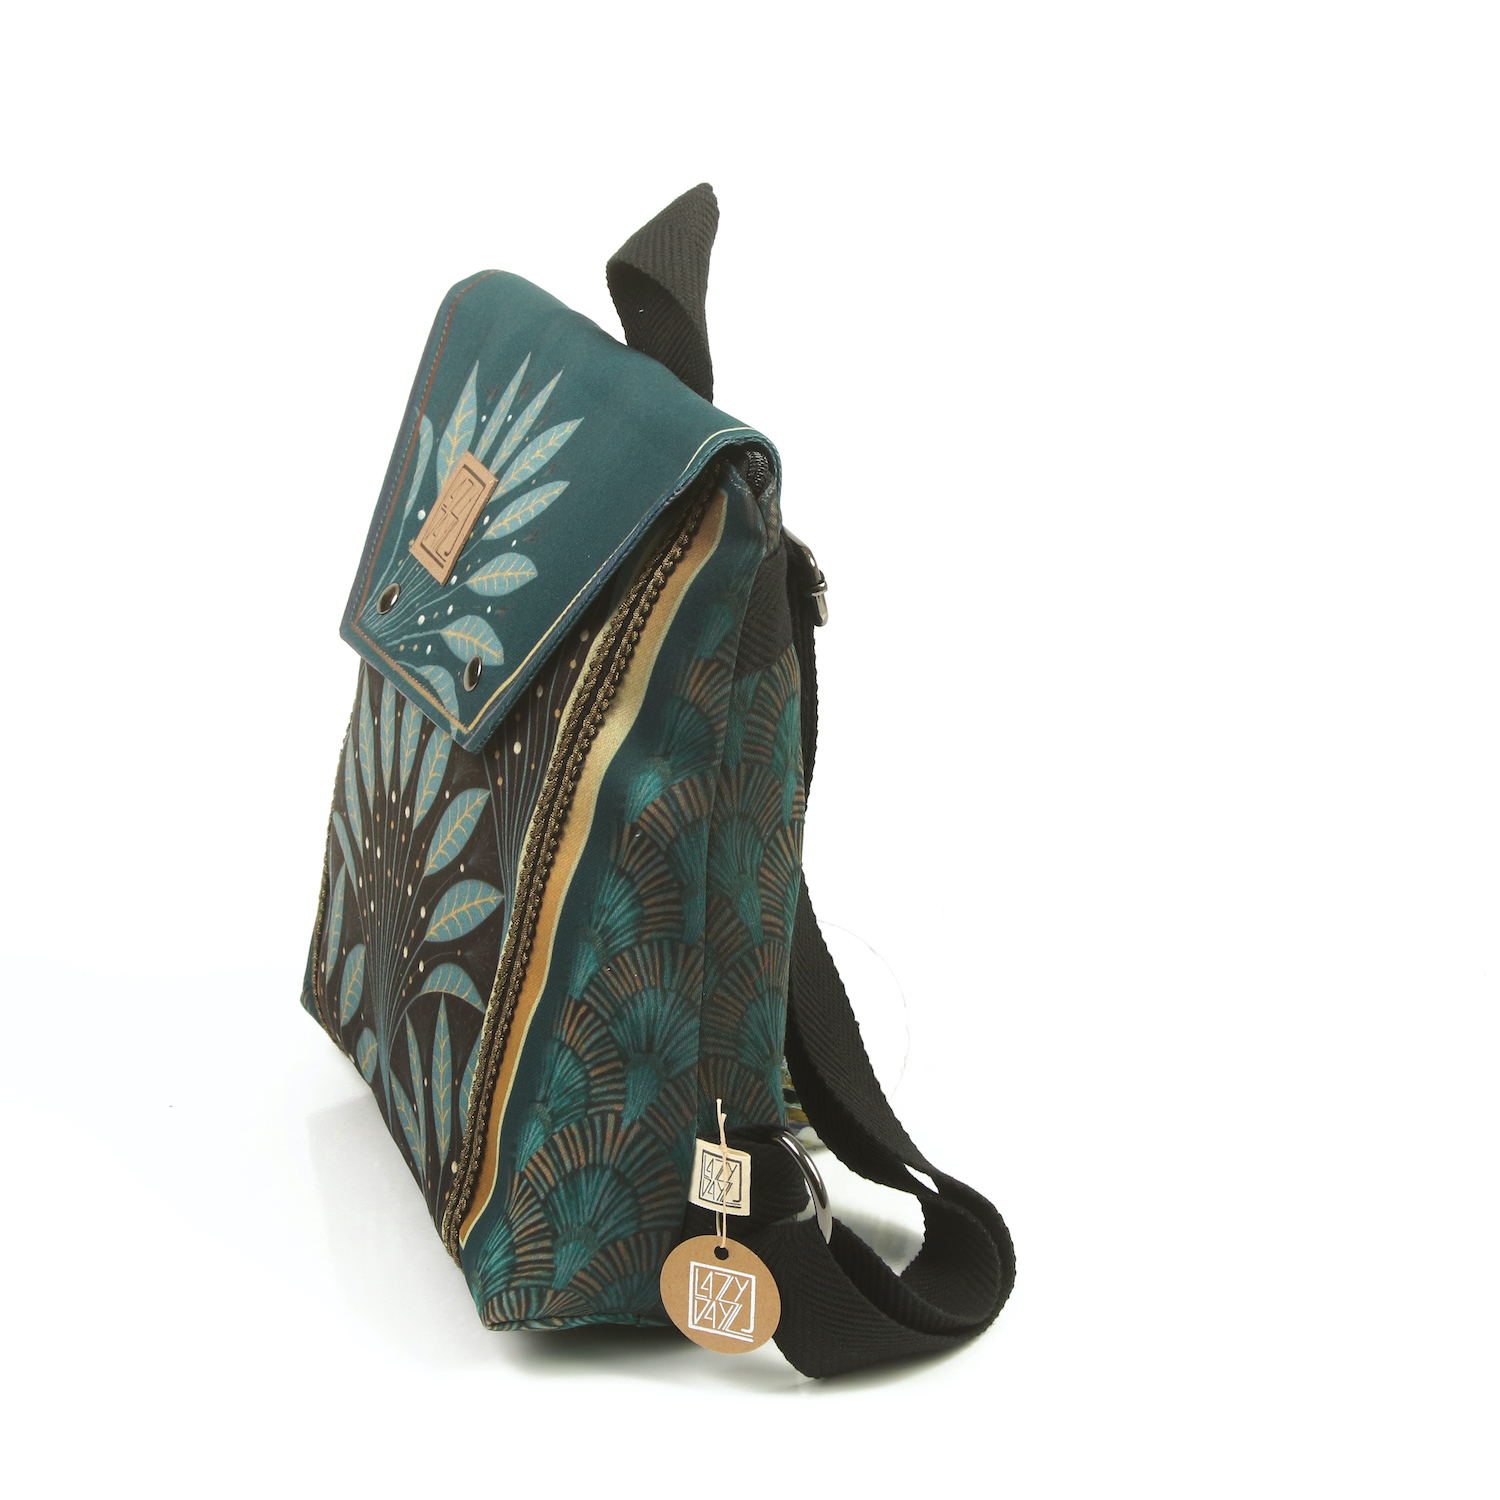 LazyDayz Designs Backpack γυναικείος σάκος πλάτης χειροποίητος bb0302b